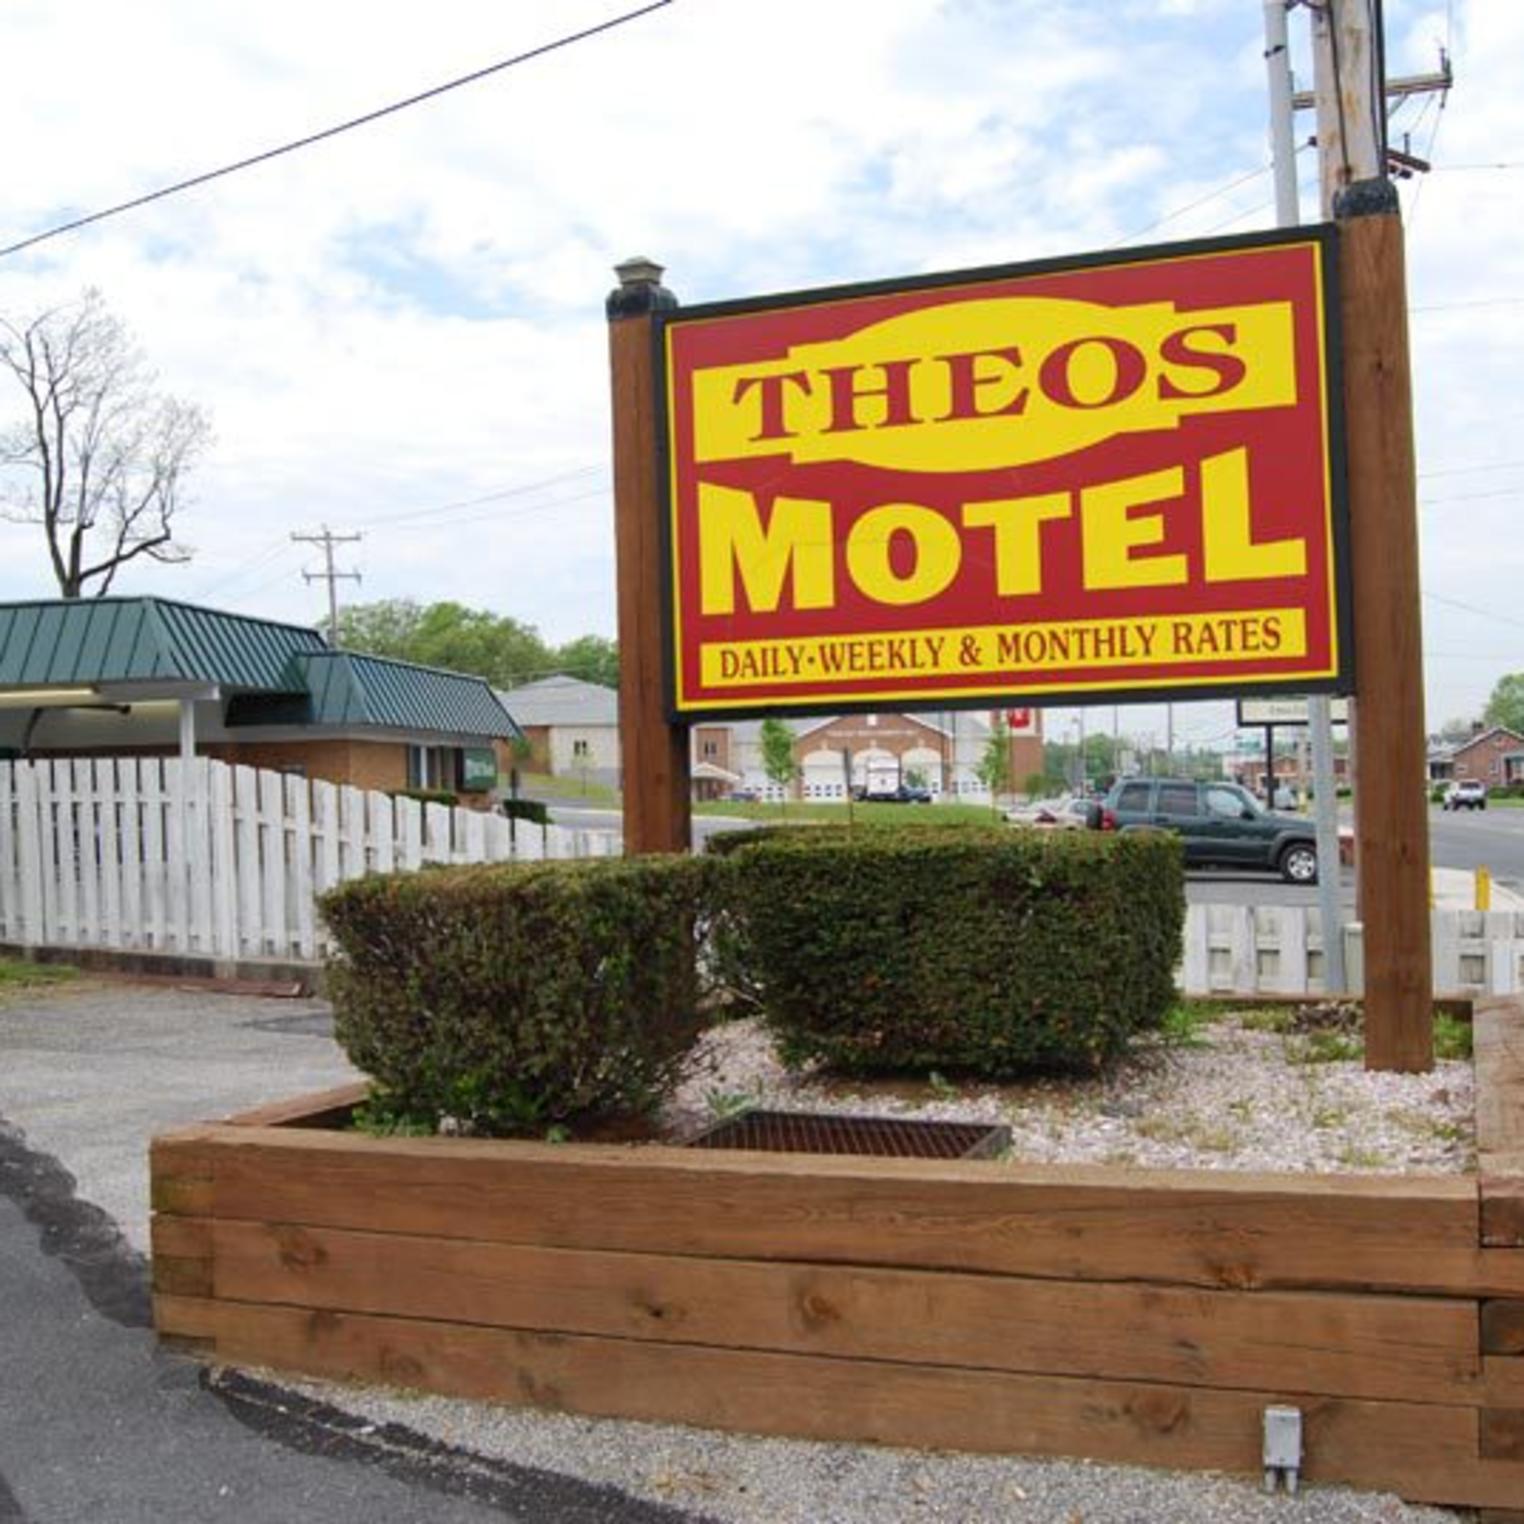 Theo's Motel